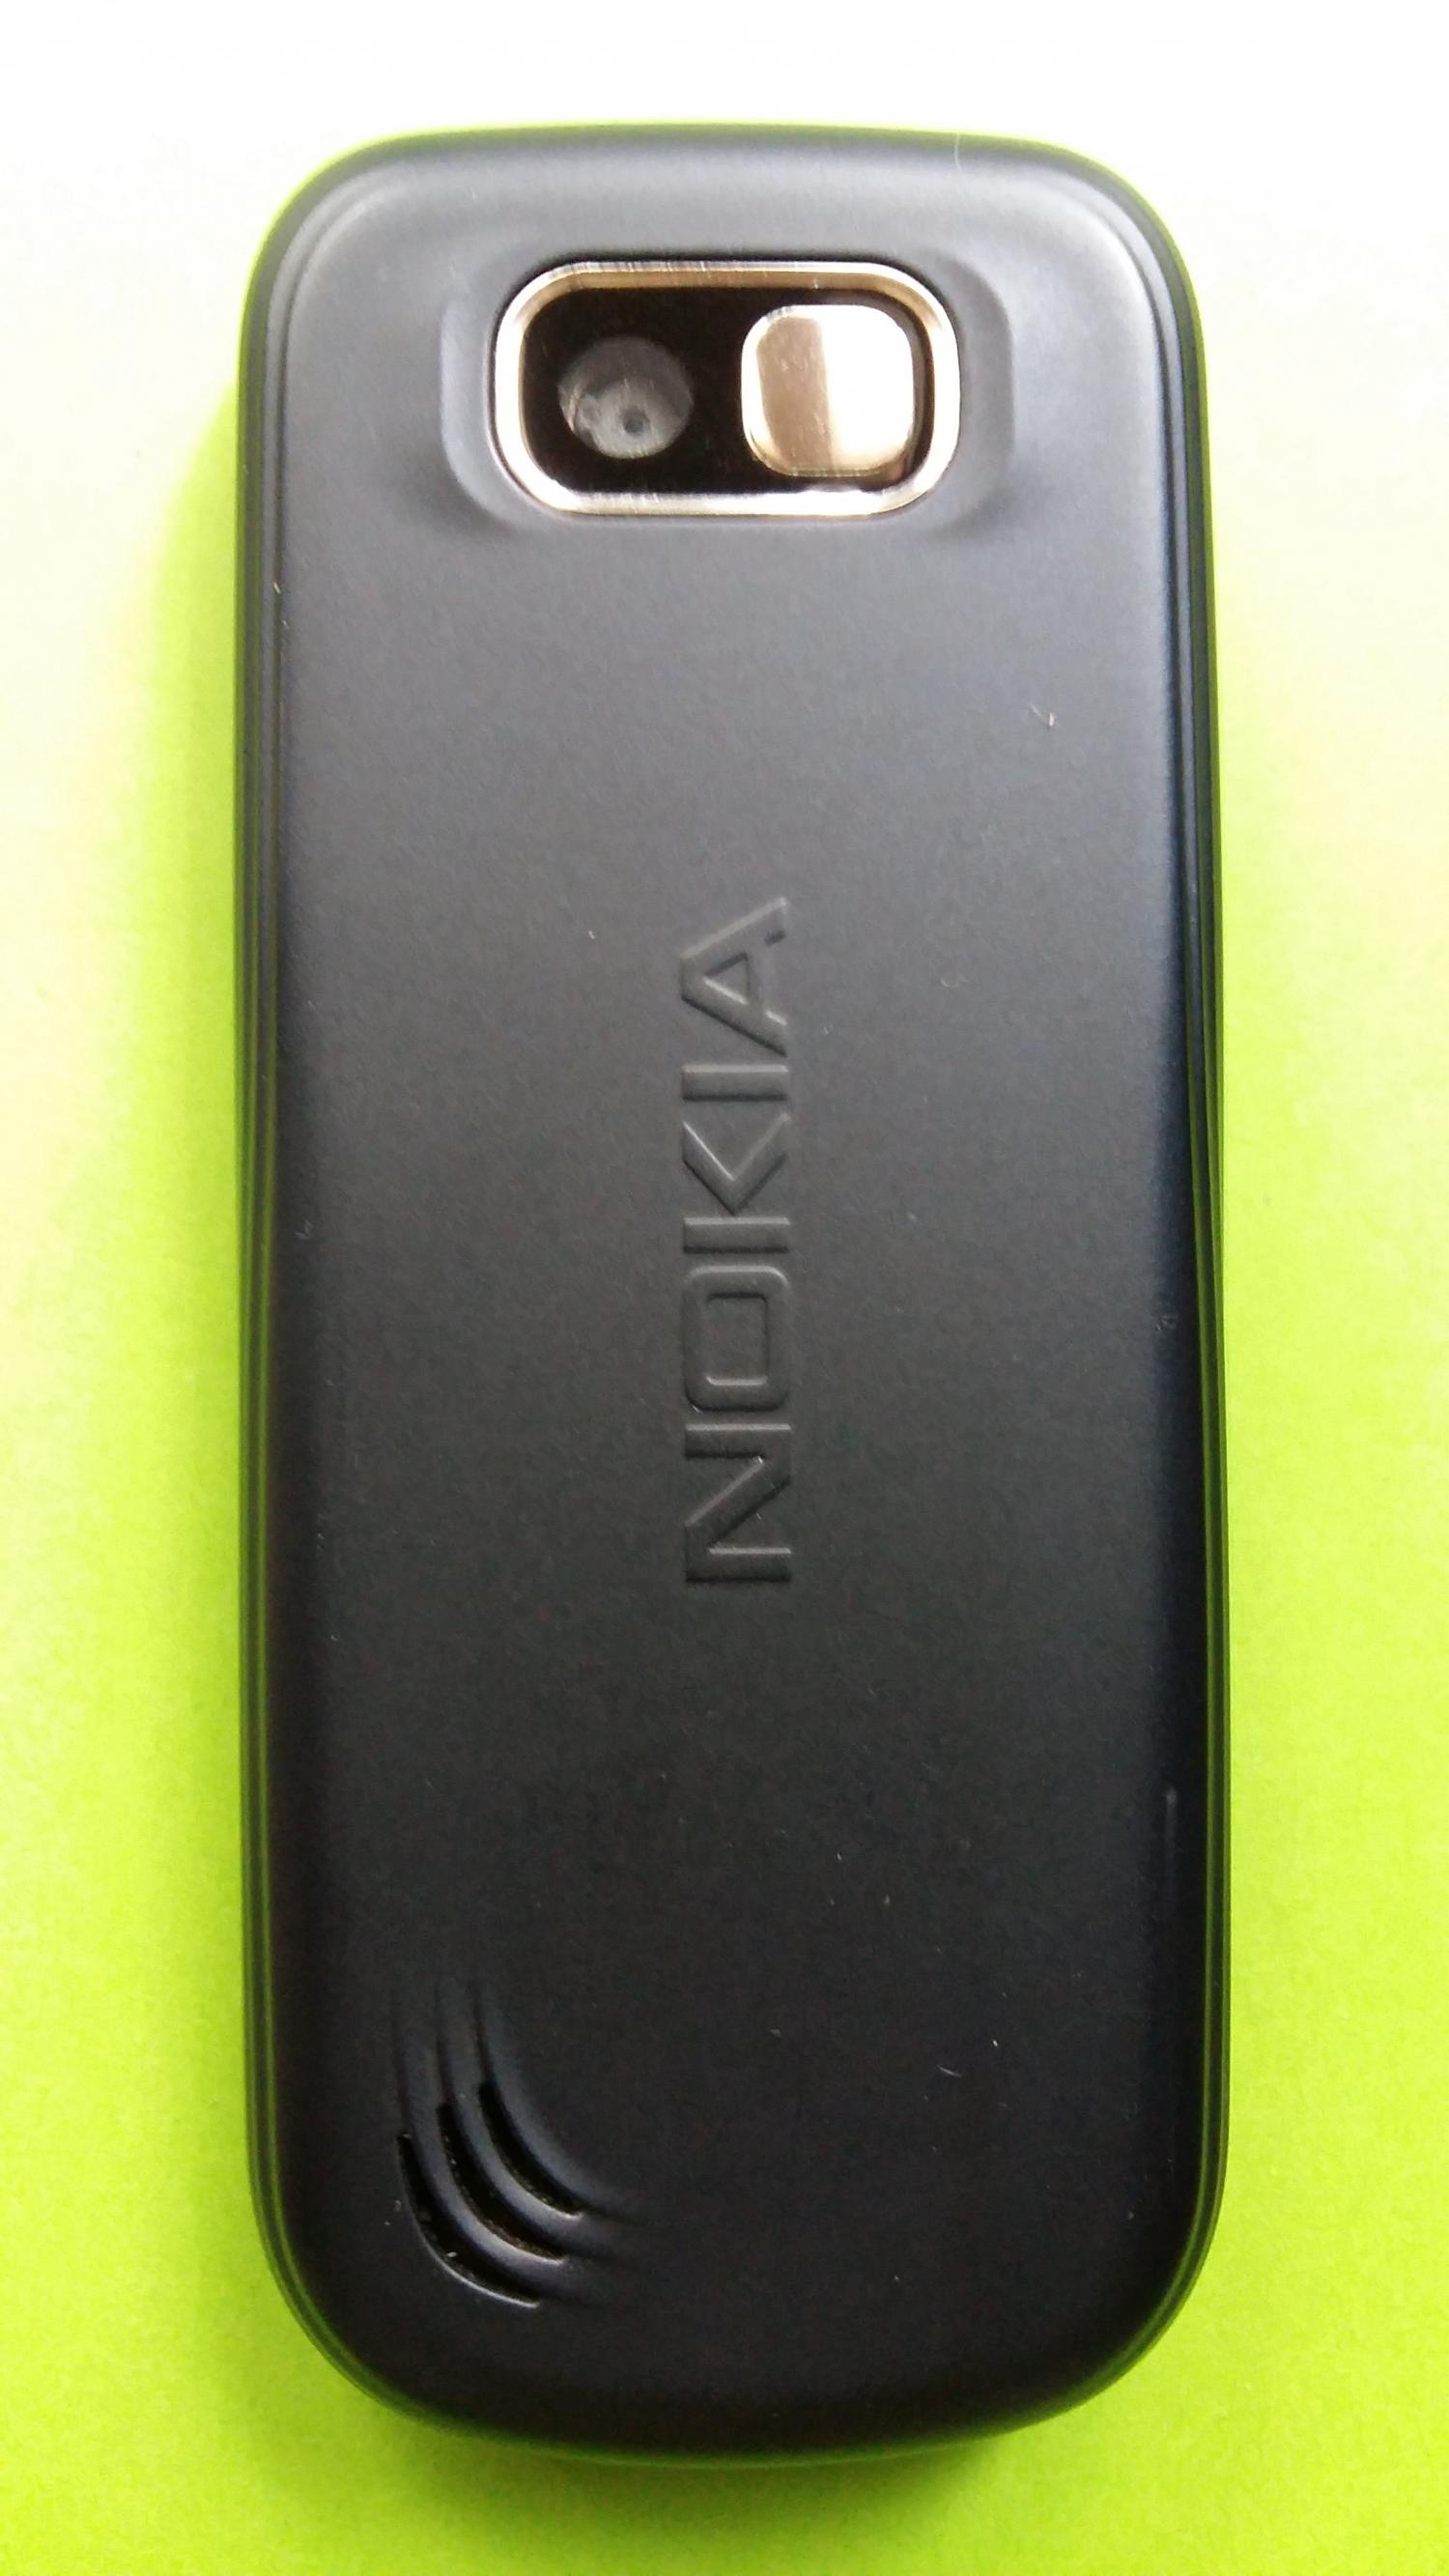 image-7301557-Nokia 2600C-2 (2)2.jpg